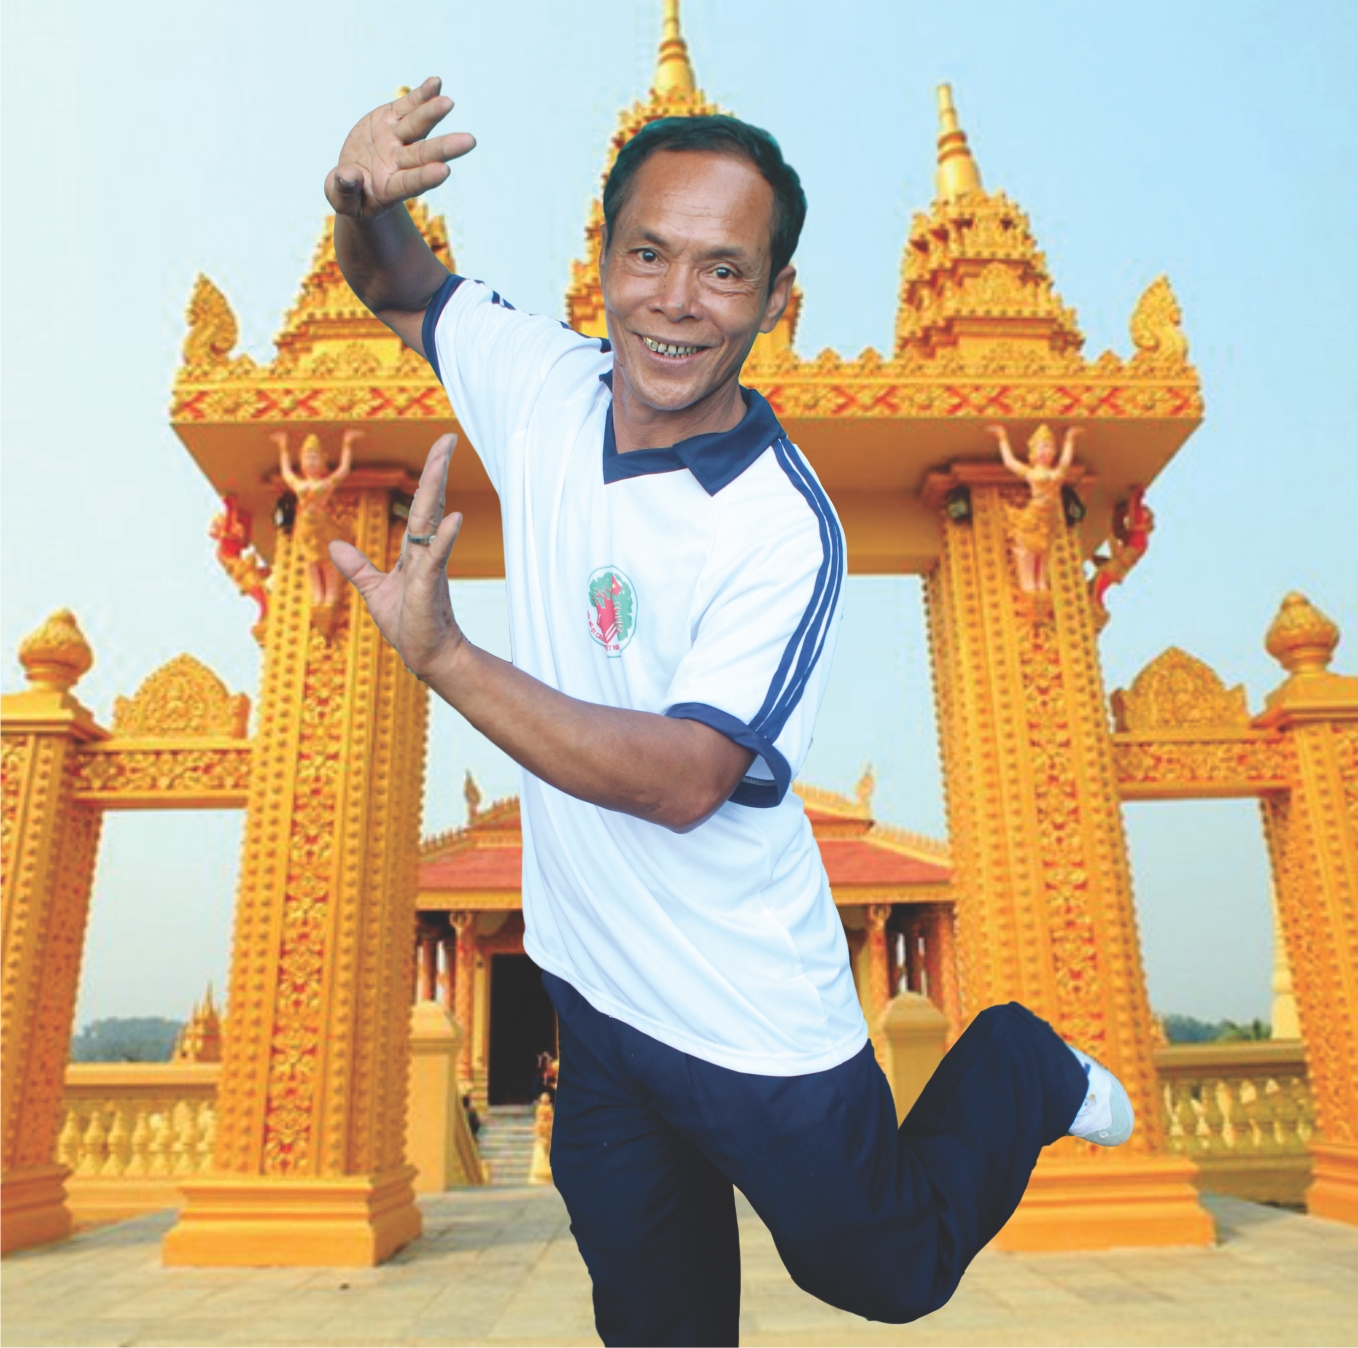 NNƯT Danh Bê say mê, tâm huyết với điệu múa Khmer